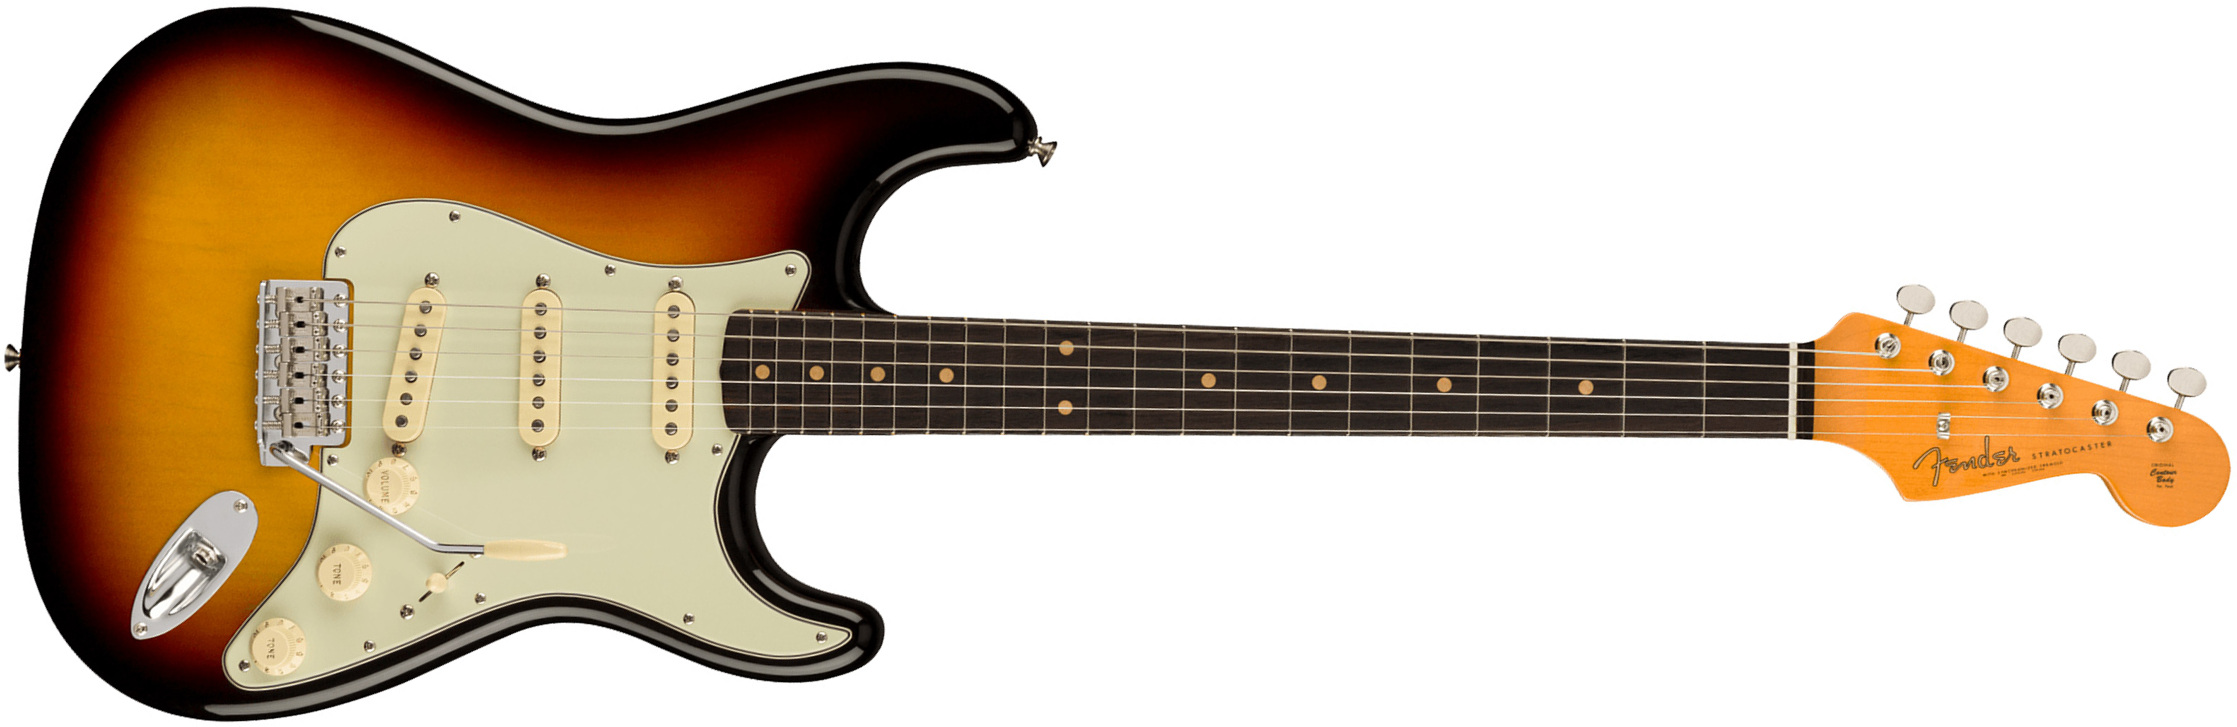 Fender Strat 1961 American Vintage Ii Usa 3s Trem Rw - 3-color Sunburst - E-Gitarre in Str-Form - Main picture